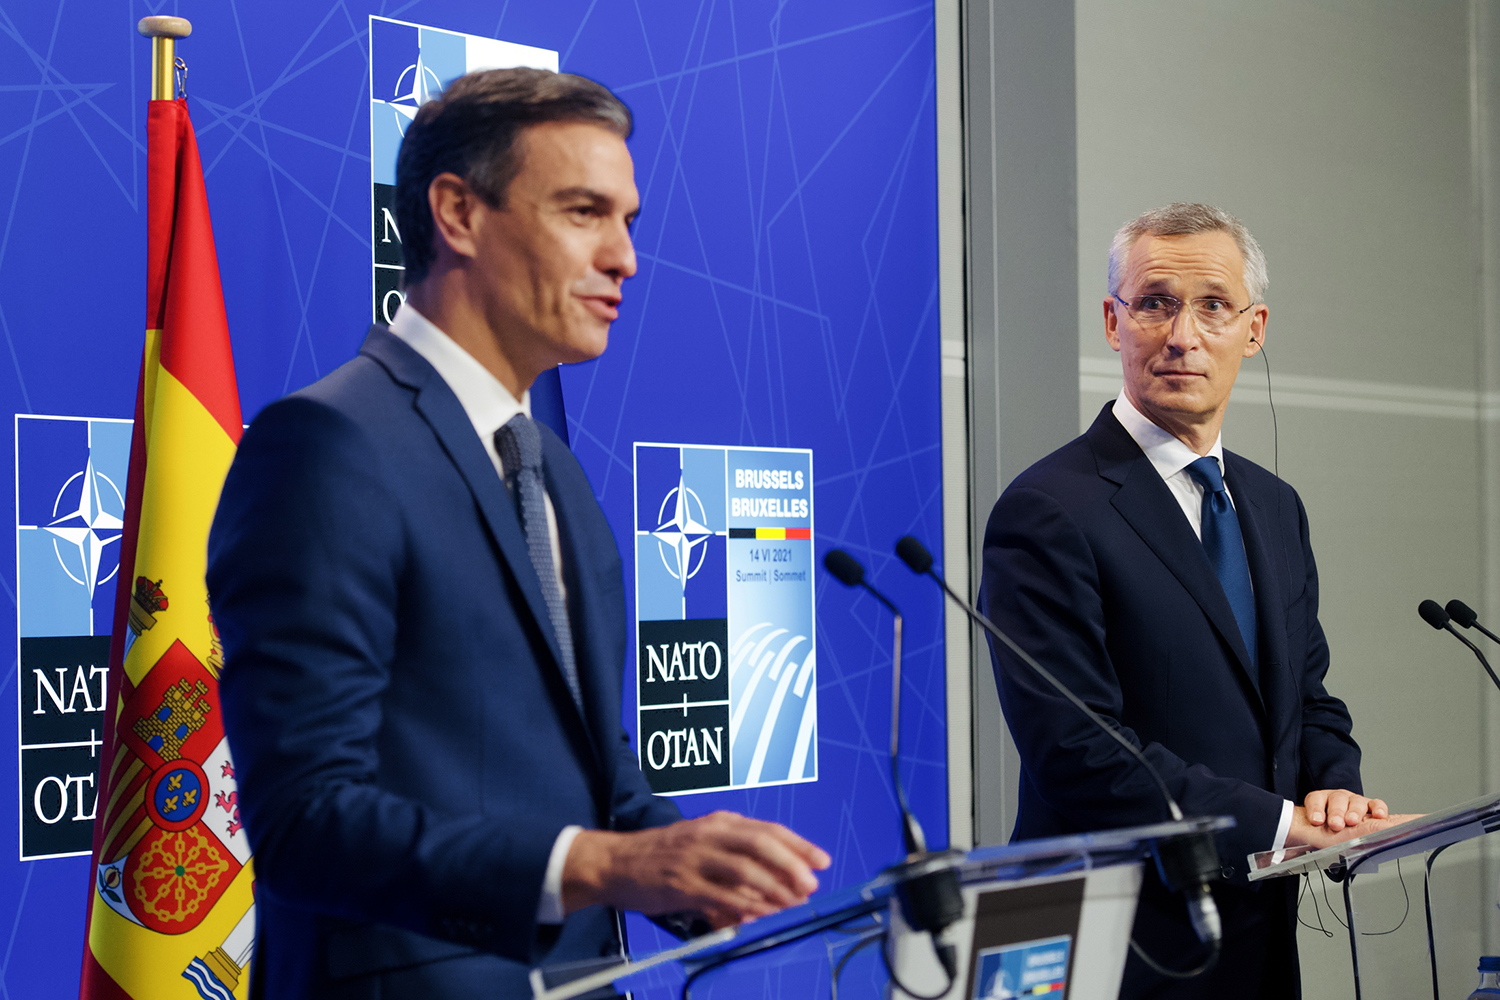 Pedro Sánchez y Jens Stoltenberg en la cumbre de ciberseguridad de la OTAN 2021 en Bruselas